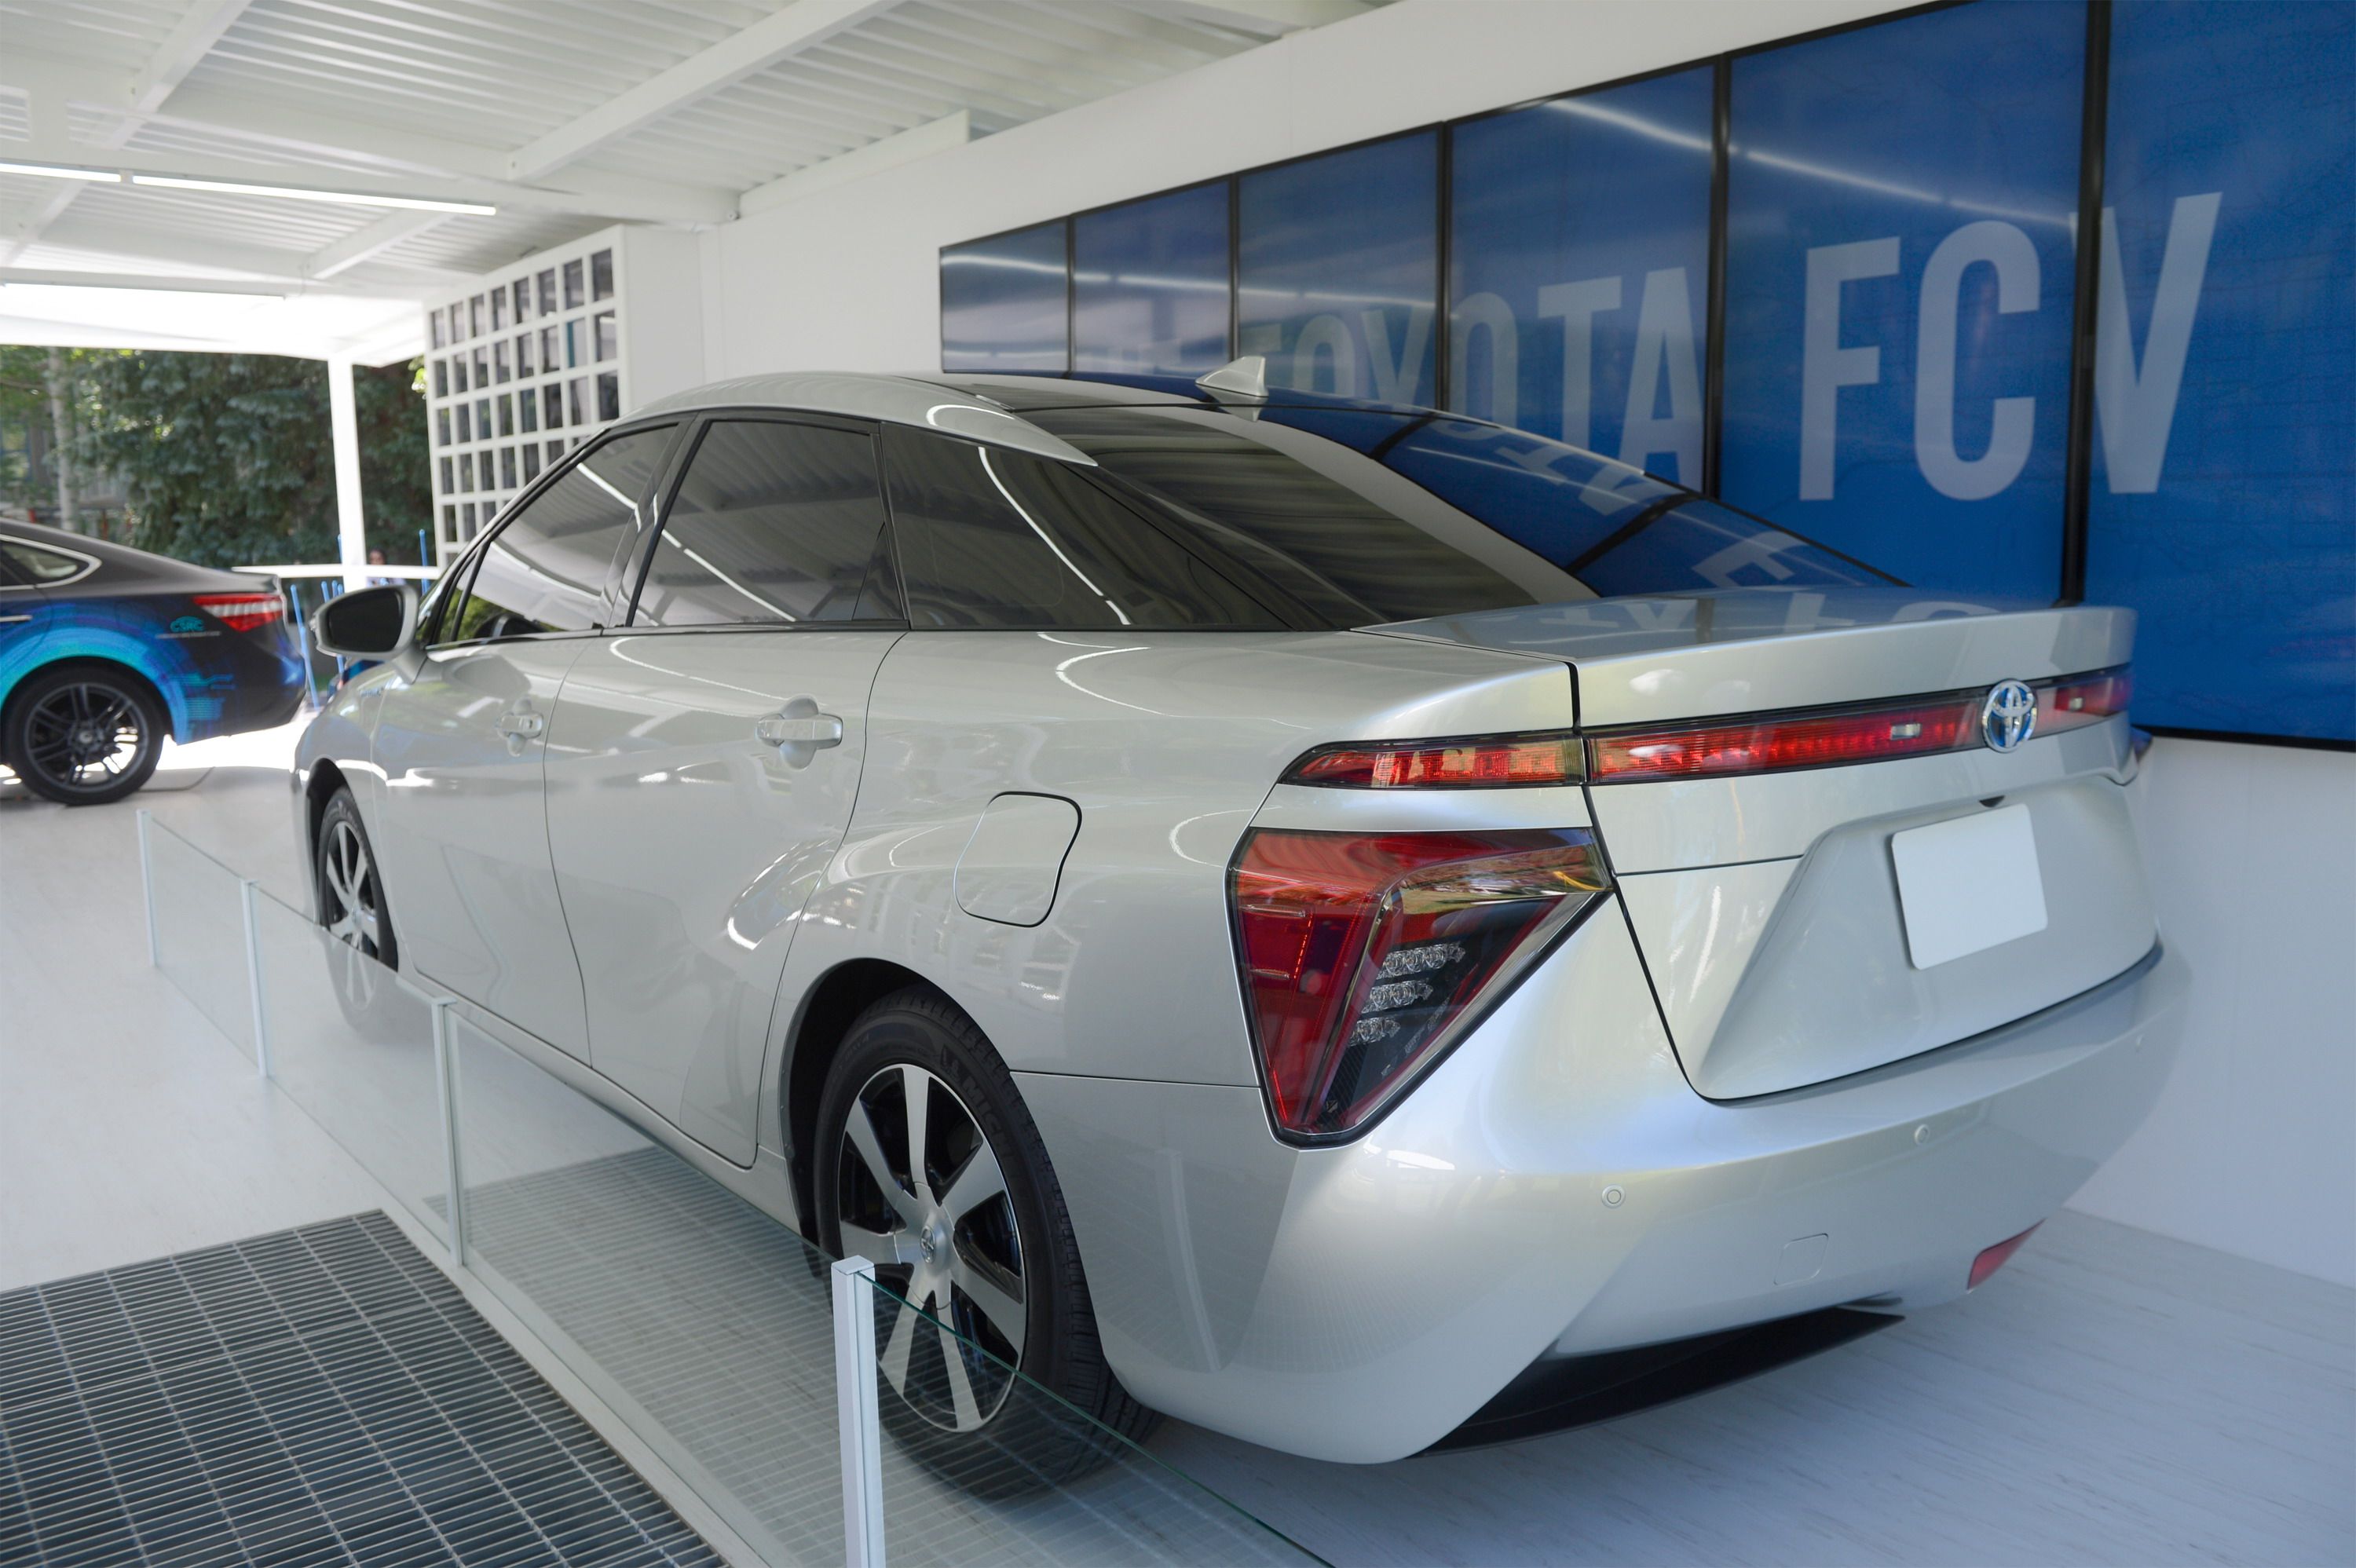 2015 Toyota FCV